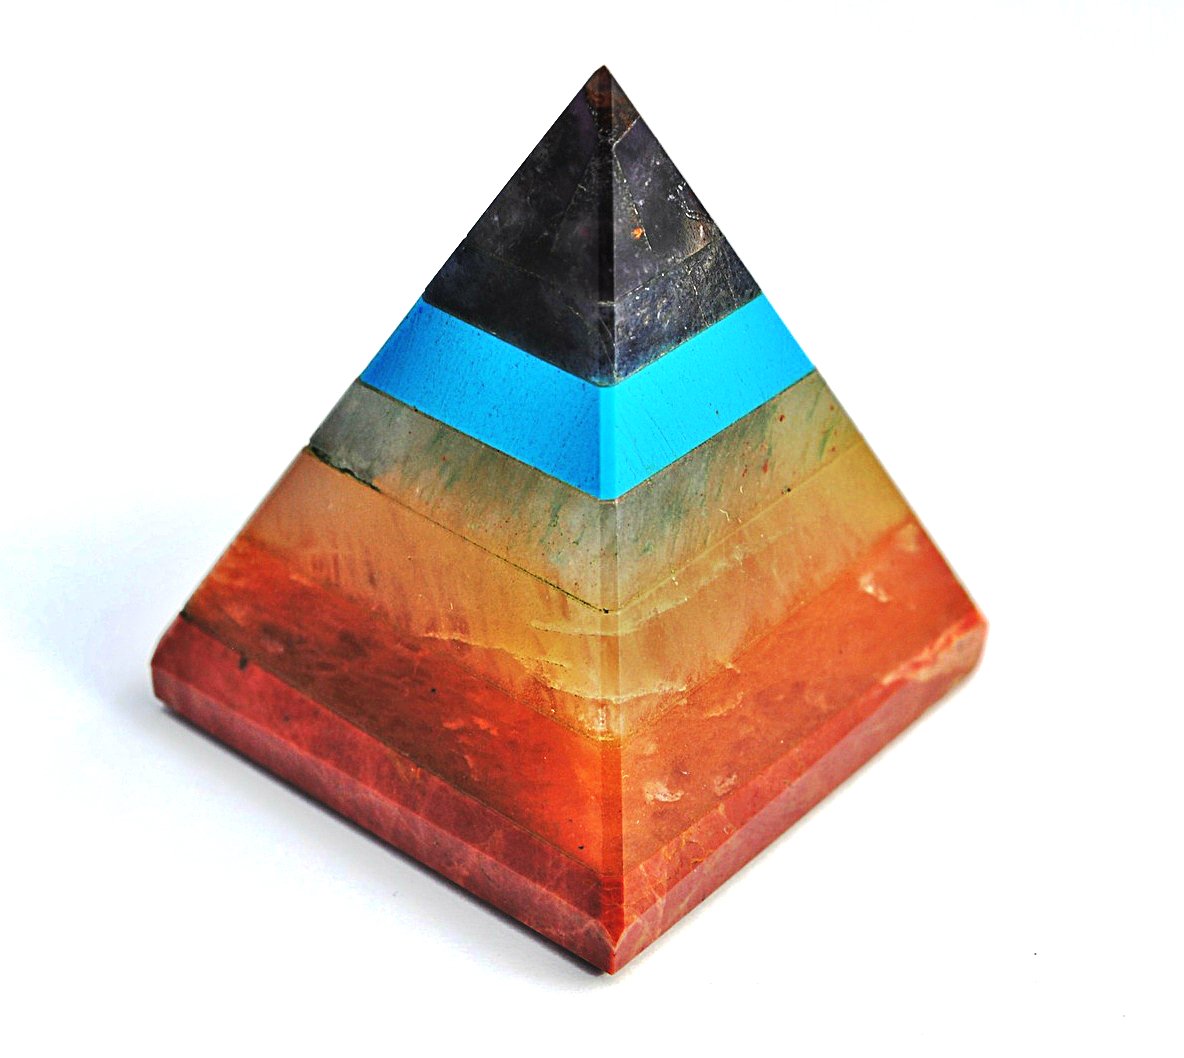 7 Chakra Pyramid